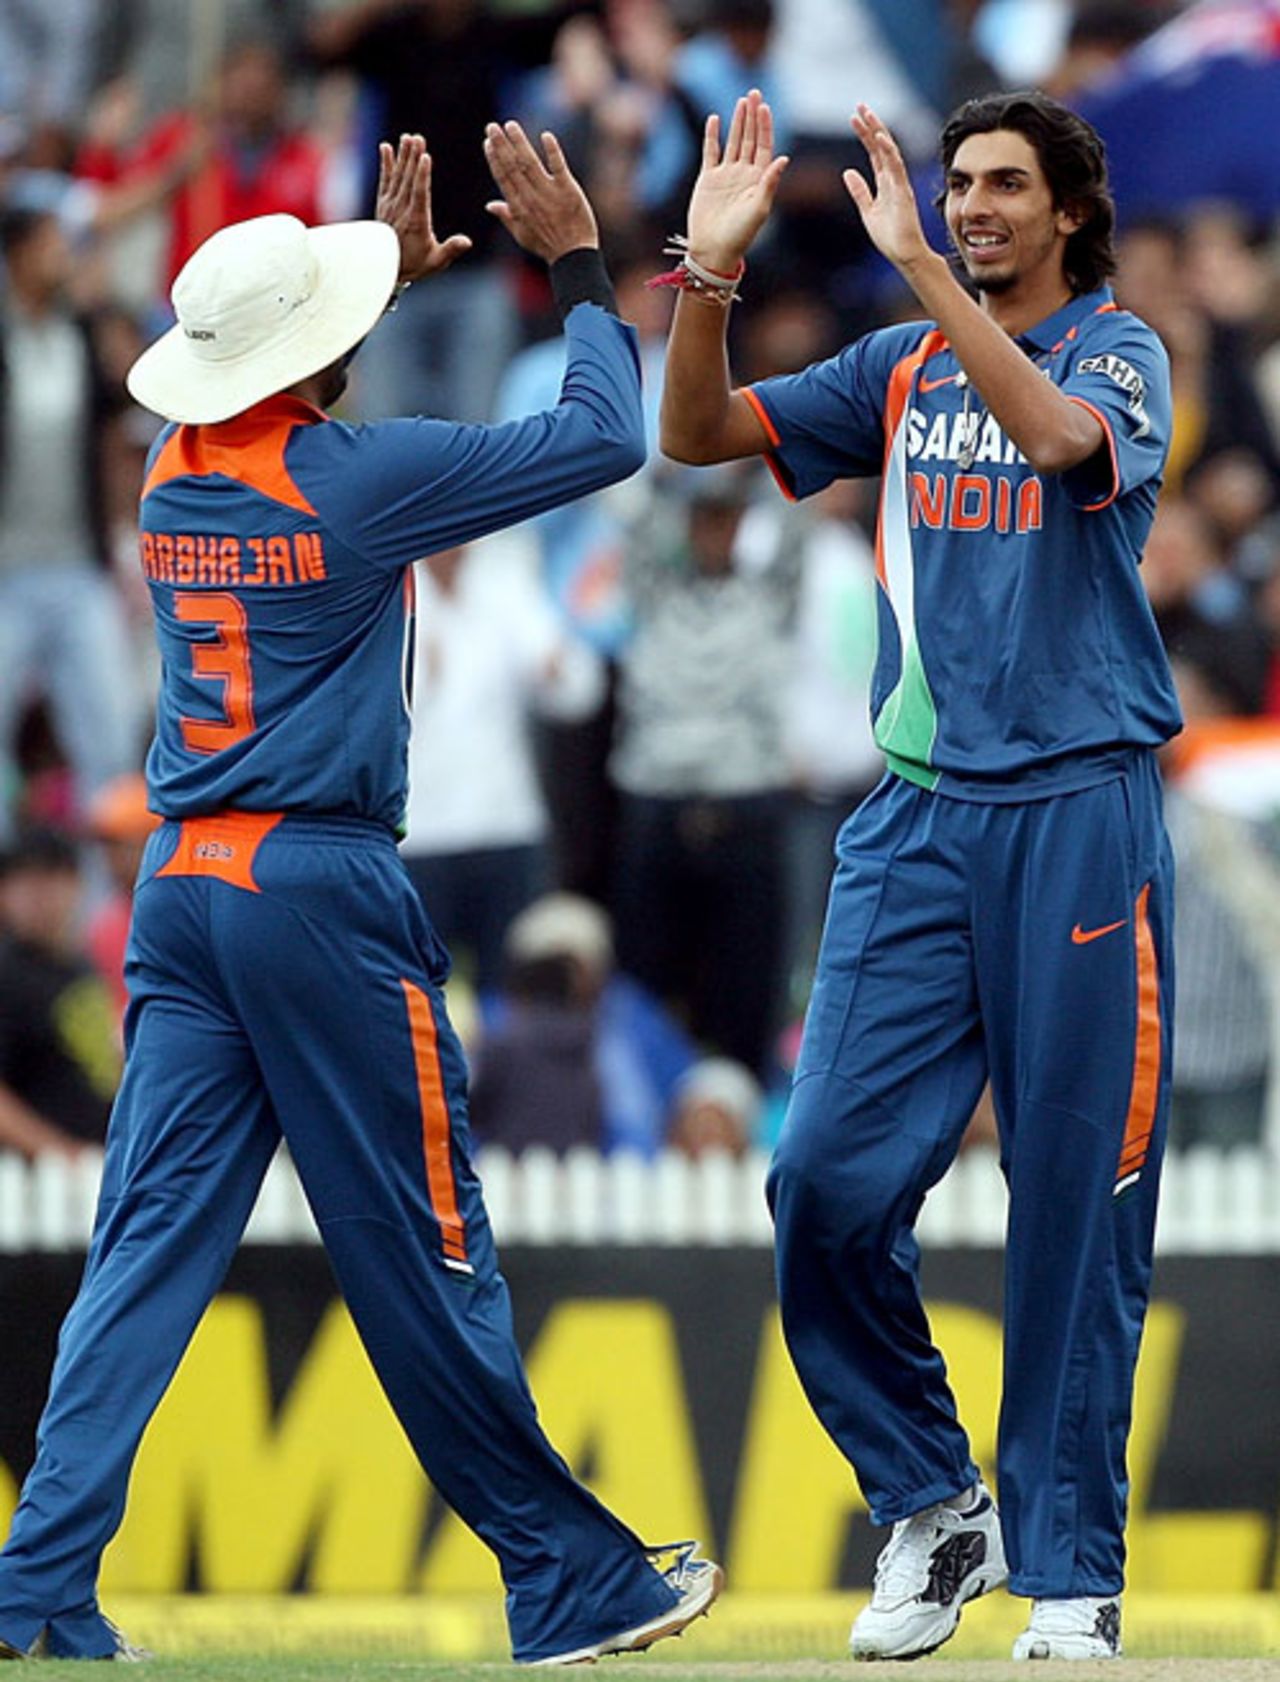 Ishant Sharma got rid of Martin Guptill for 25, New Zealand v India, 4th ODI, Hamilton, March 11, 2009